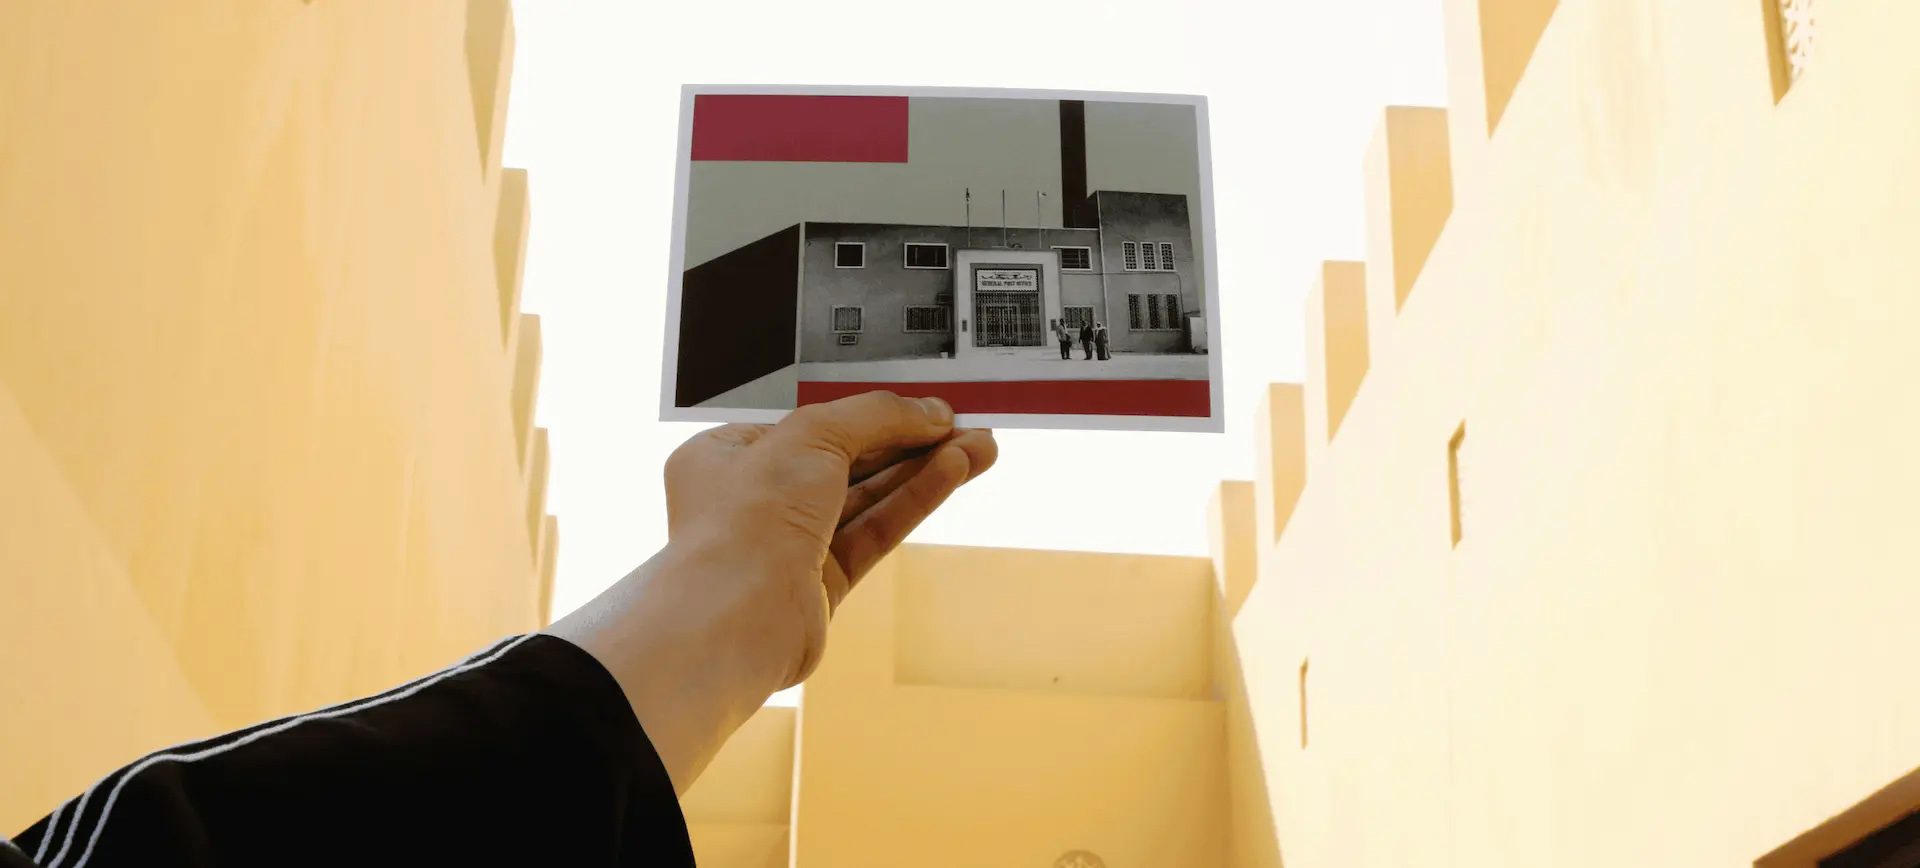 بريد الإمارات يطلق مسابقة "الصور البريدية" لتشجيع الموهوبين بالتصوير الفوتوغرافي  